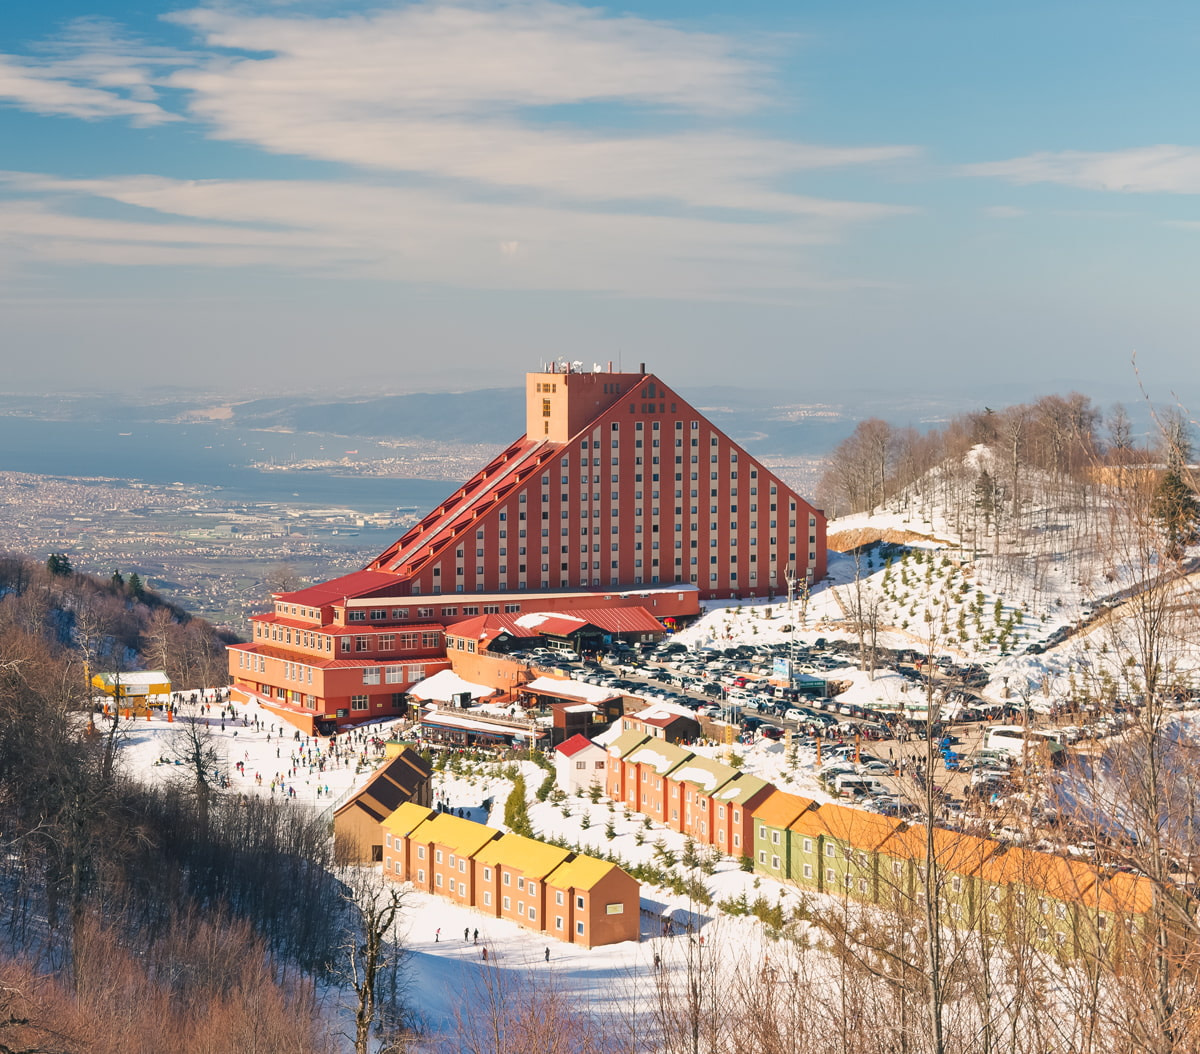 Kocaeli Kartepe Ski Resort